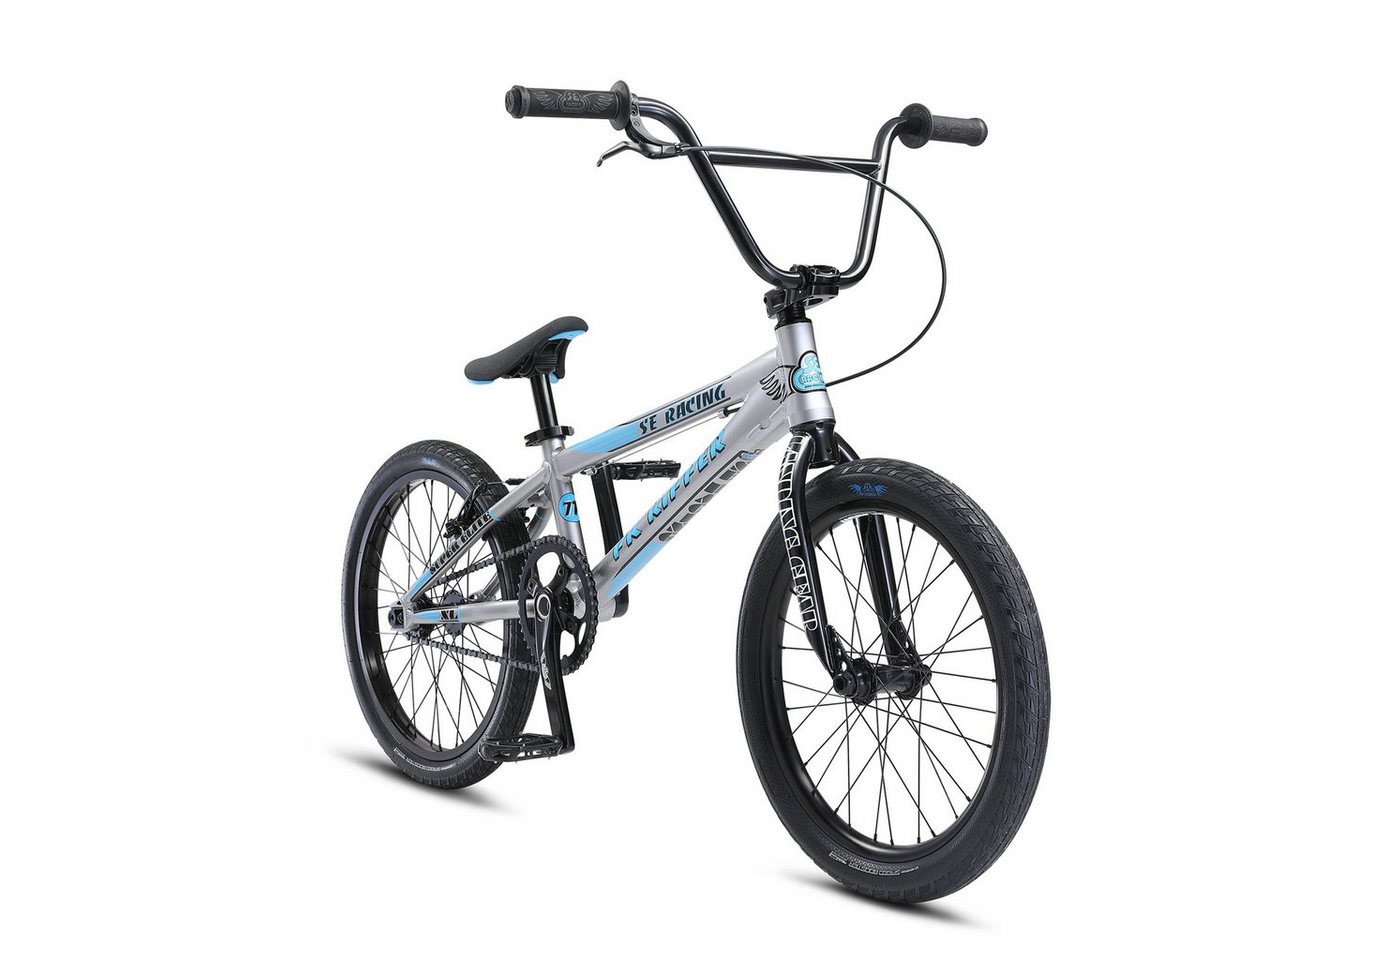 SE Bikes BMX-Rad PK Ripper Super Elite XL, 1 Gang, ohne Schaltung, BMX Bike Fahrrad BMX Rad Stunt Old School Dirt 20" von SE Bikes